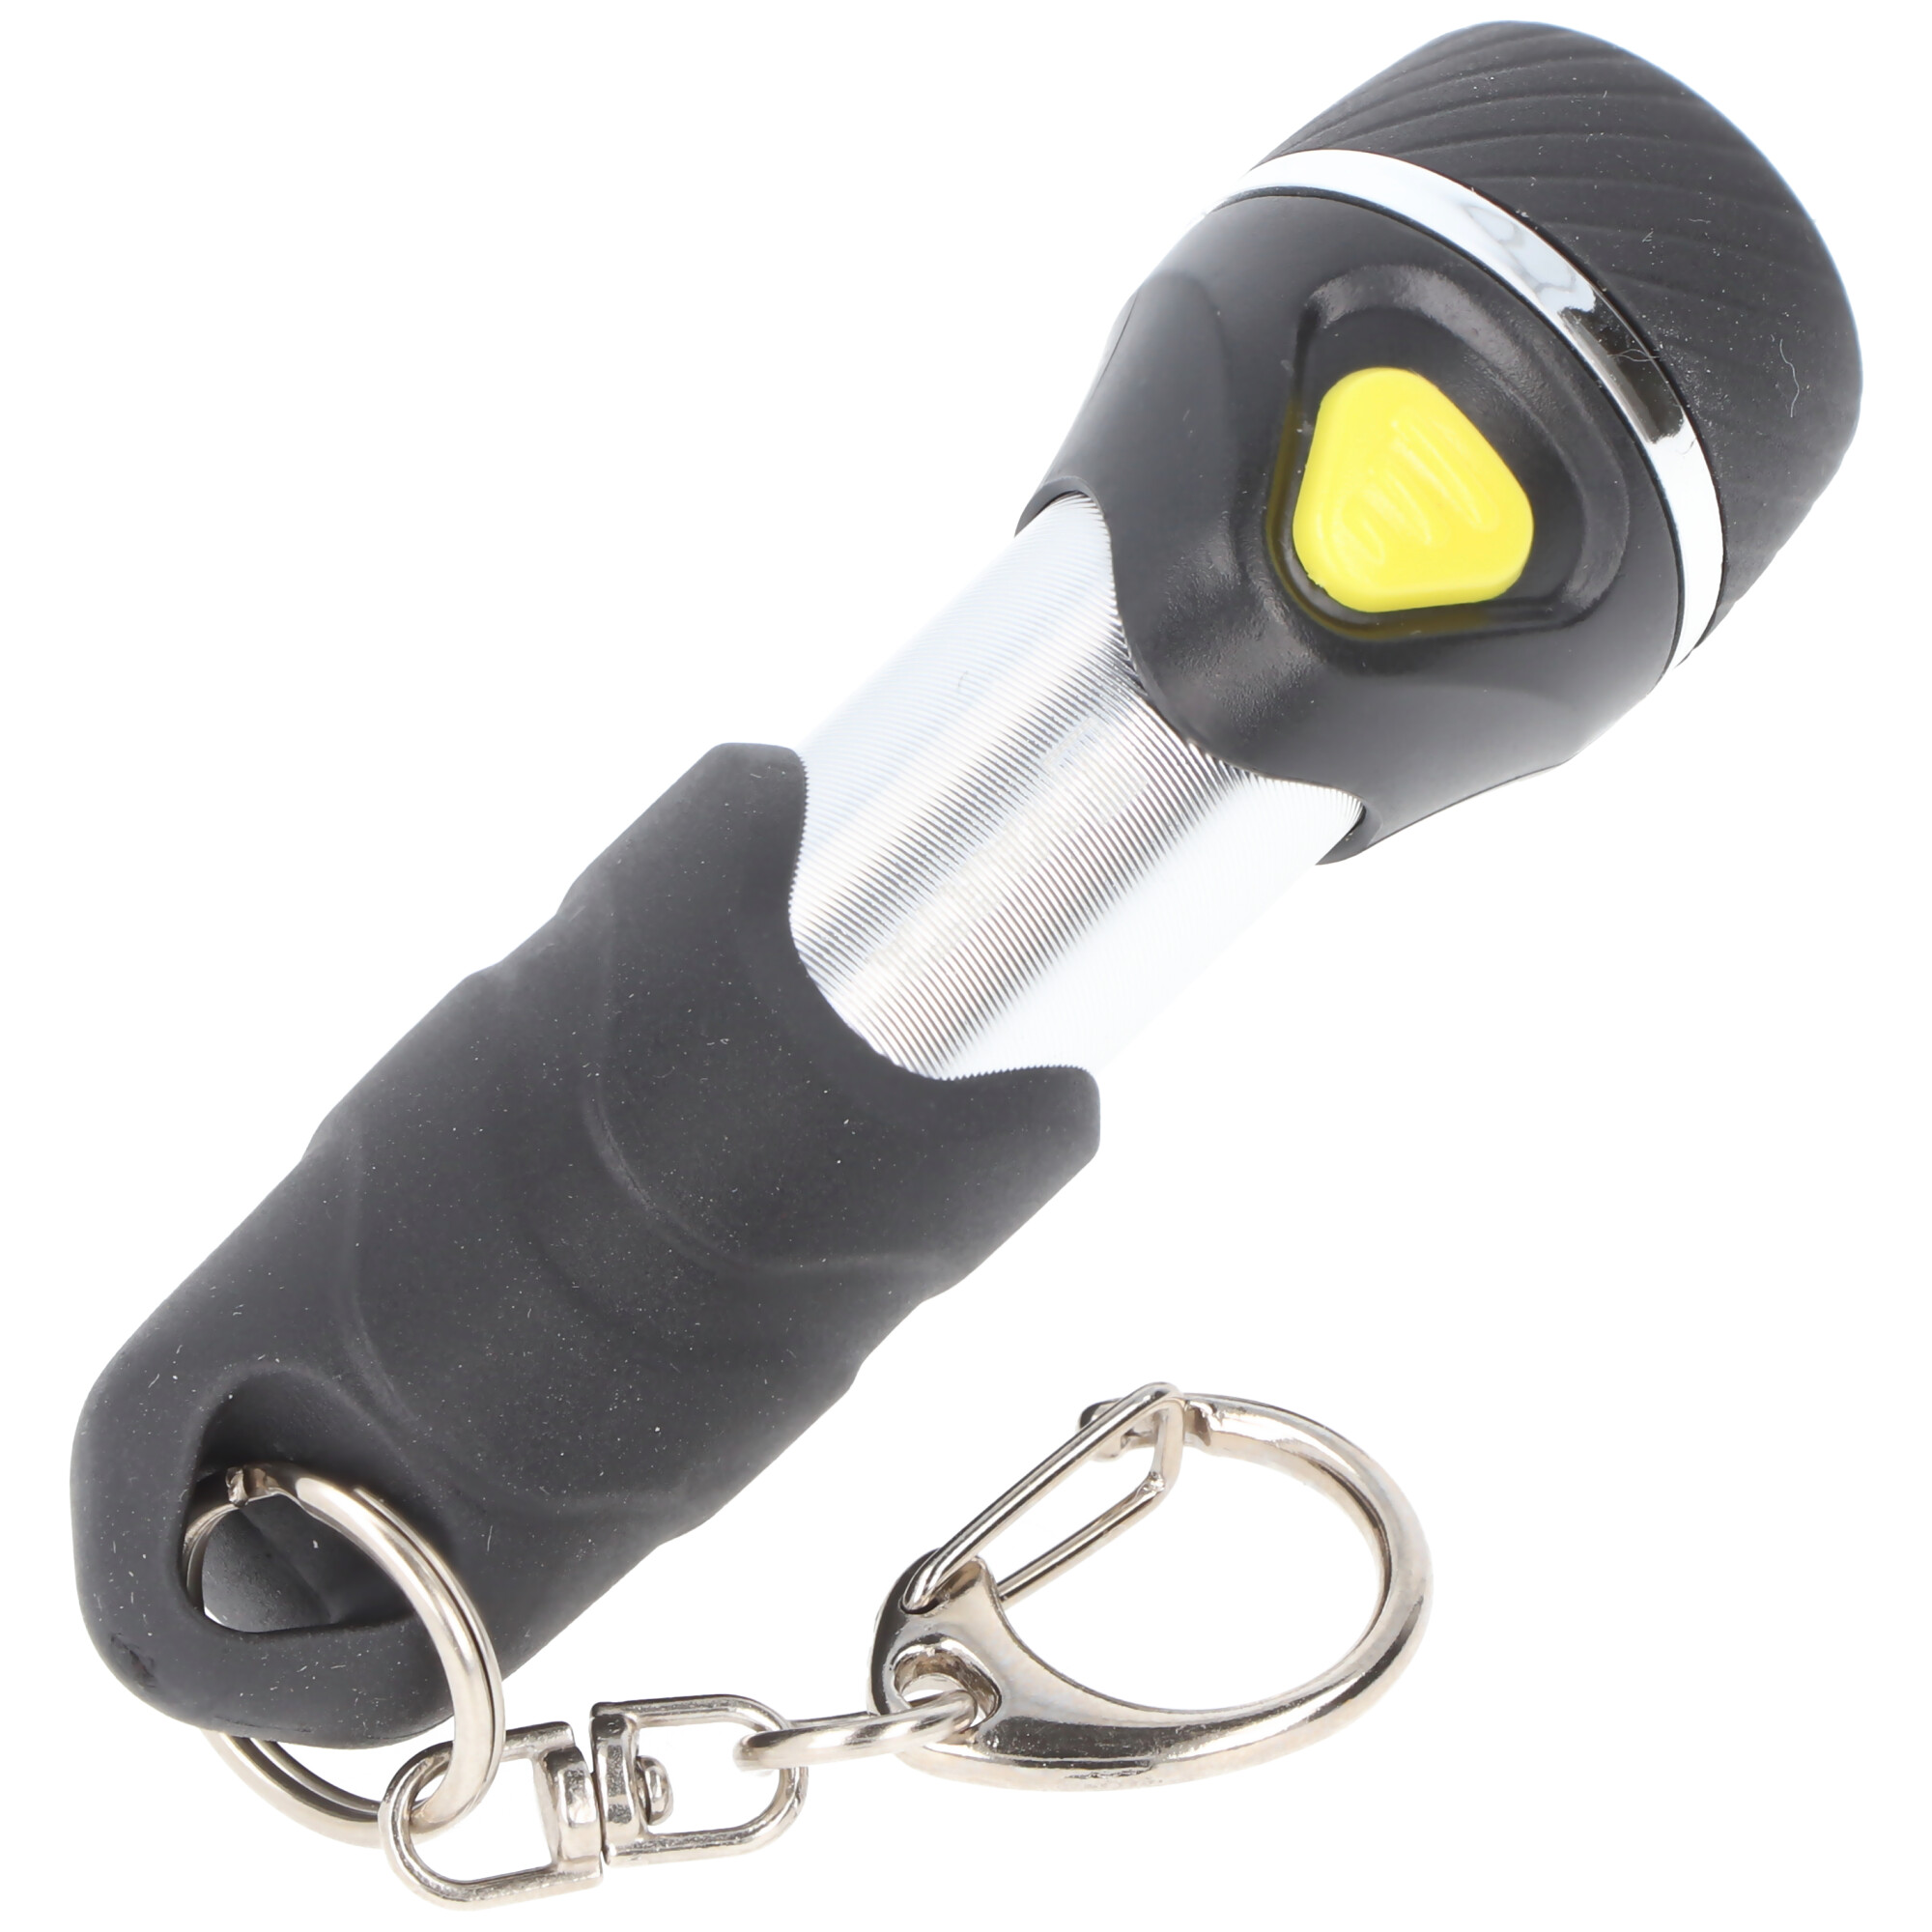 Varta LED Taschenlampe Day Light, Key Chain 12lm, inkl. 1x Batterie  Alkaline AAA, Retail Blister | LED-Taschenlampen | LEDs,Taschenlampen,  Lichttechnik | Akkushop